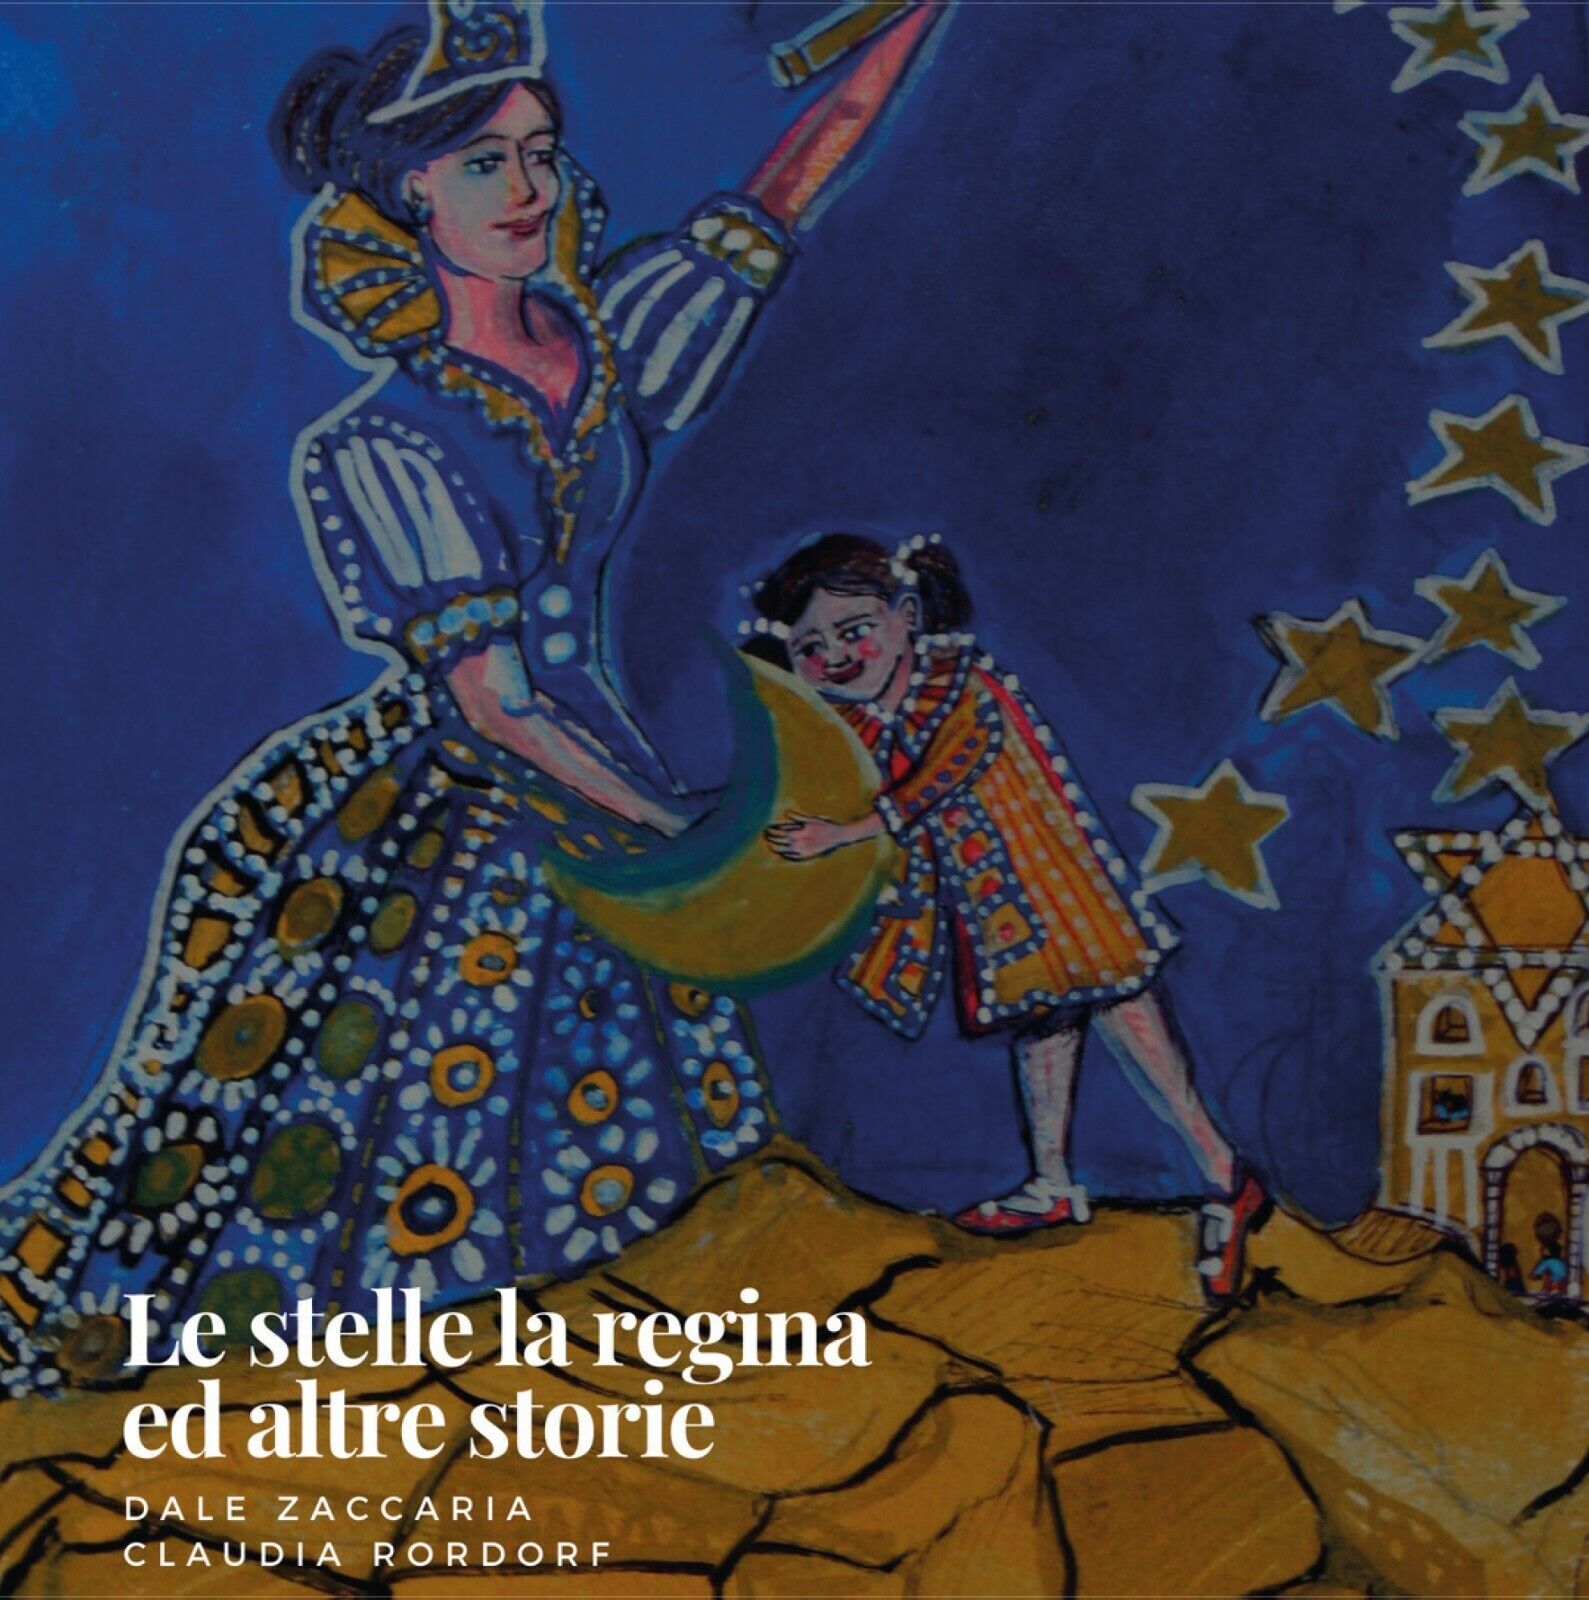   Le stelle, la Regina ed altre storie - Dale Zaccaria E Claudia Rordorf,  2020